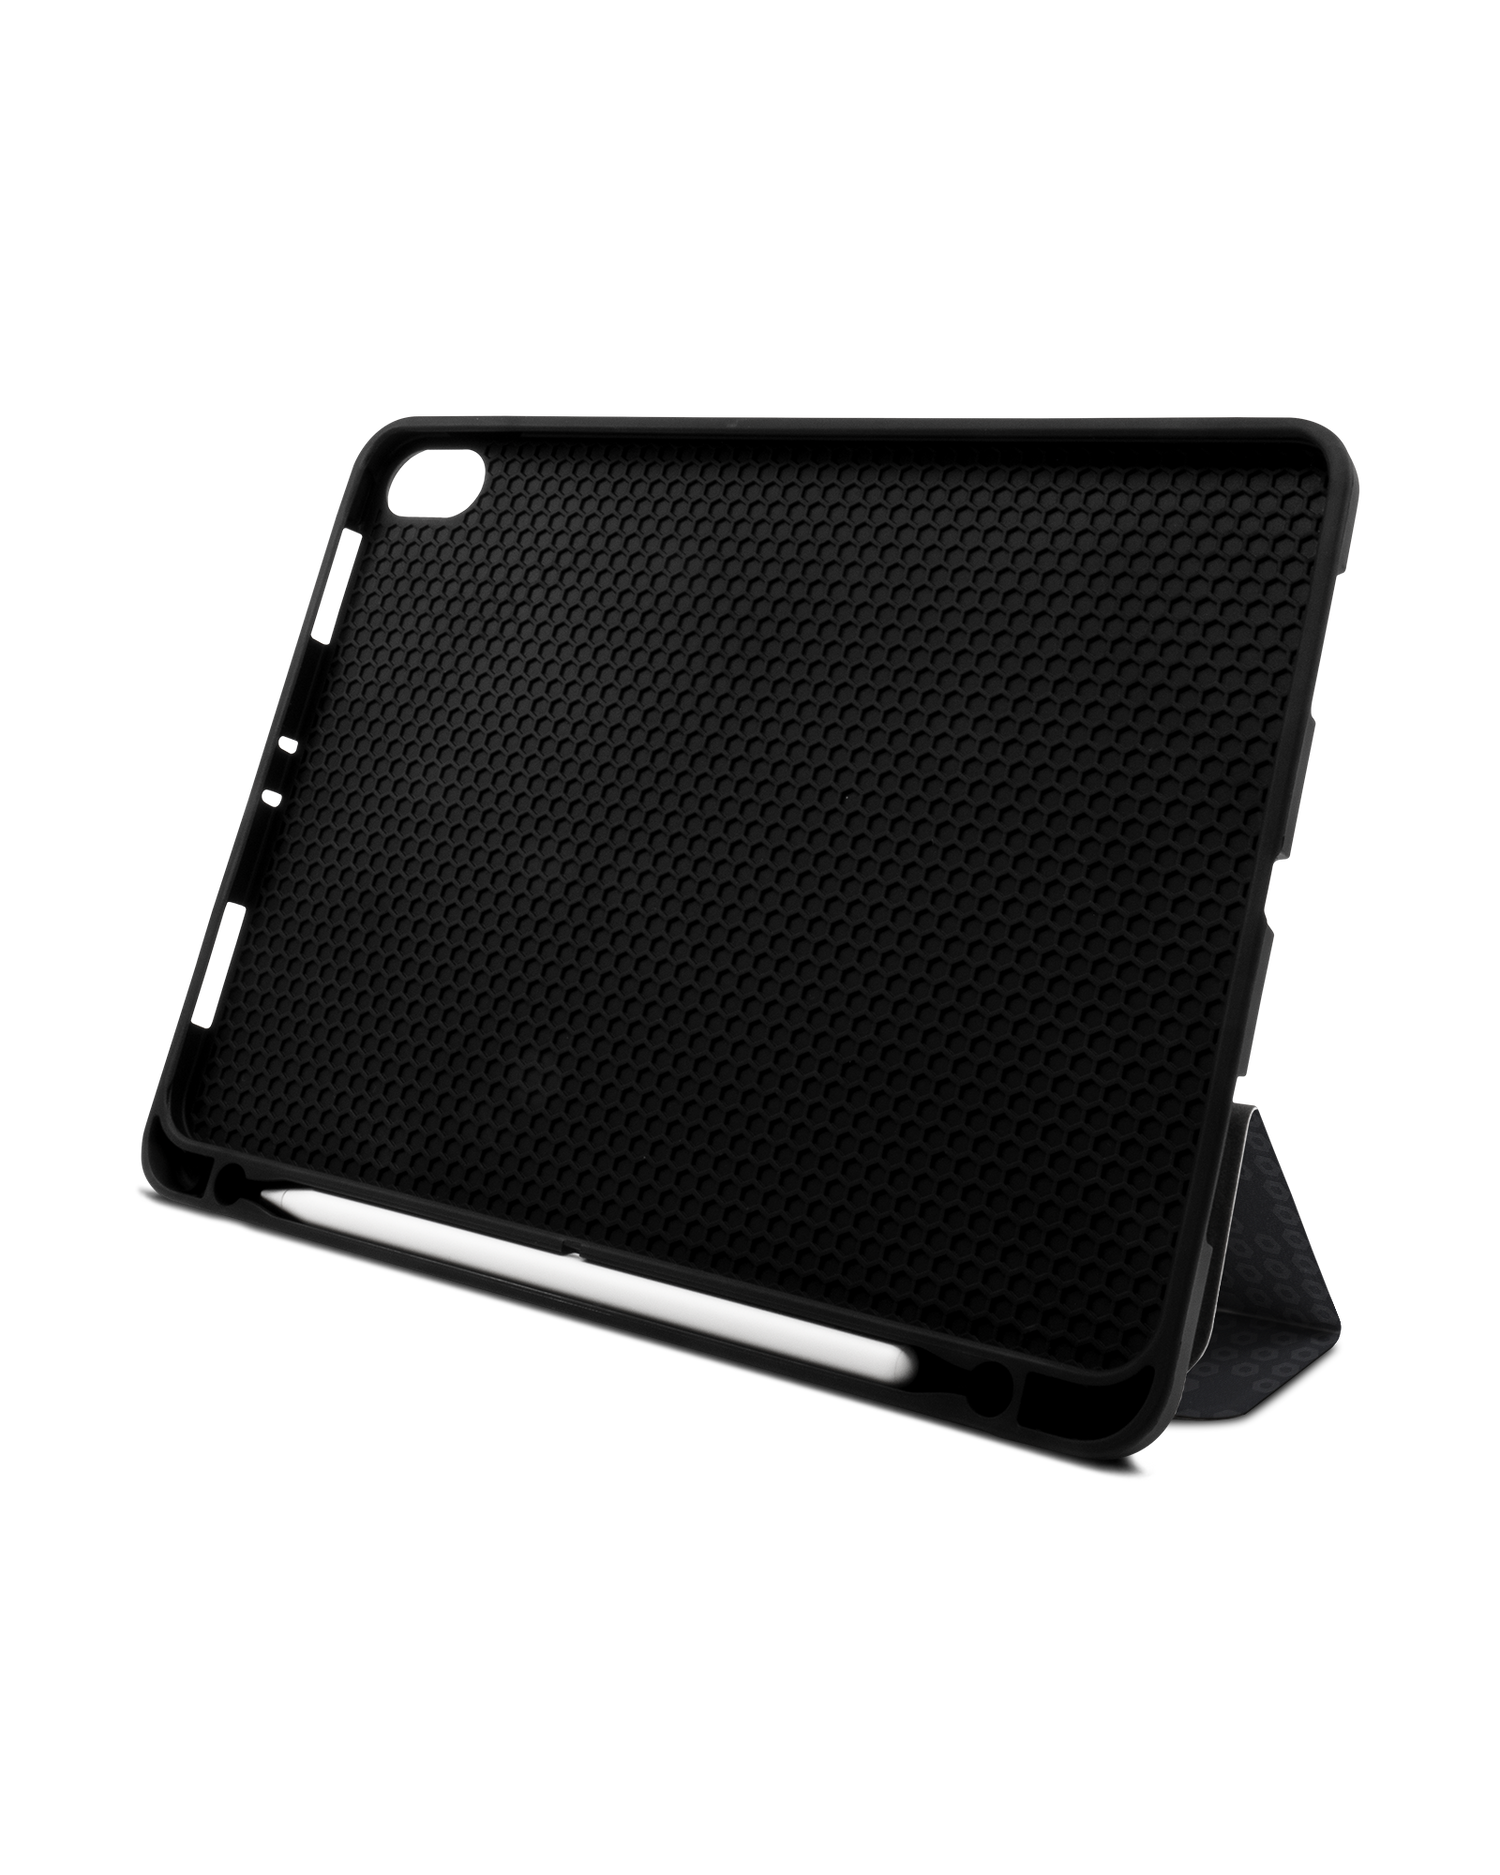 Spec Ops Dark iPad Hülle mit Stifthalter Apple iPad Pro 11'' (2018): Aufgestellt im Querformat von vorne